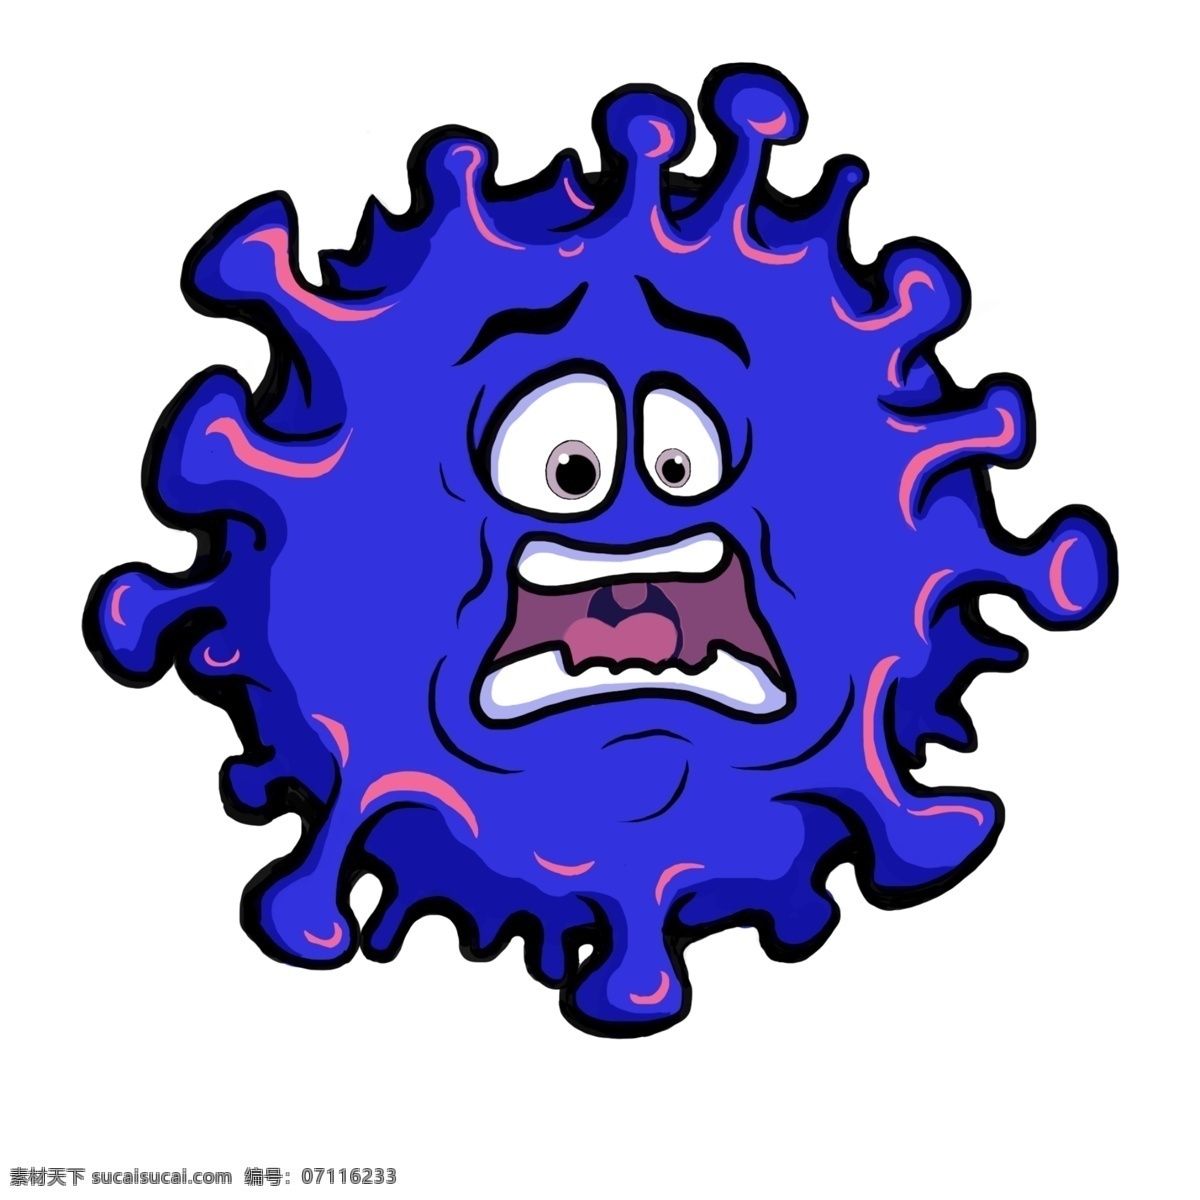 蓝色 手绘 卡通 病毒 冠状病毒 分层